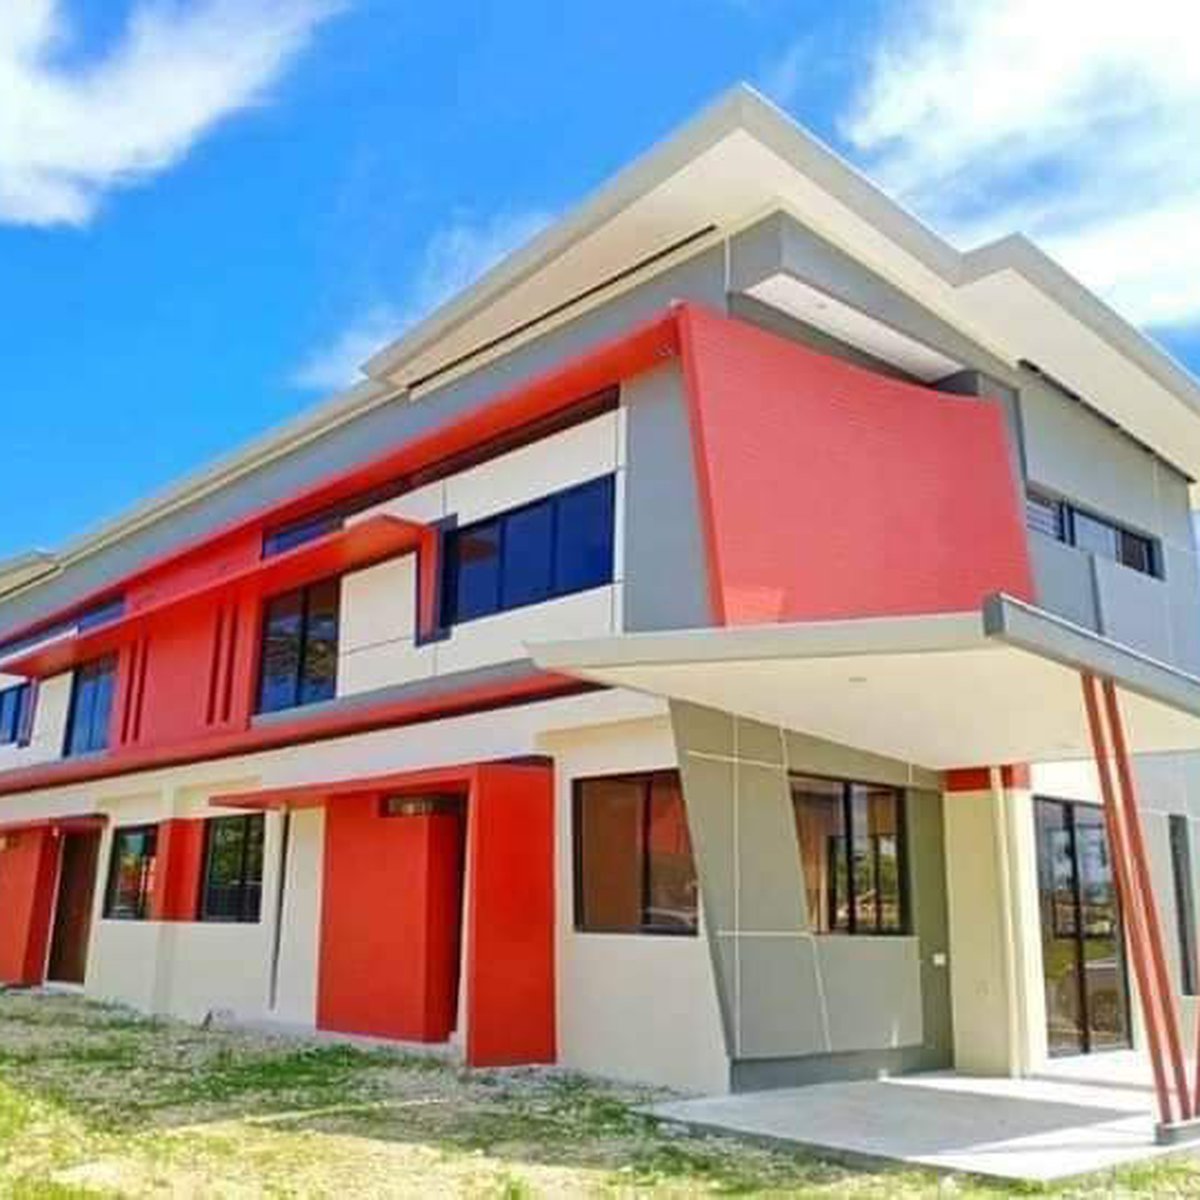 3-bedroom Single Detached House for sale in Liloan Cebu